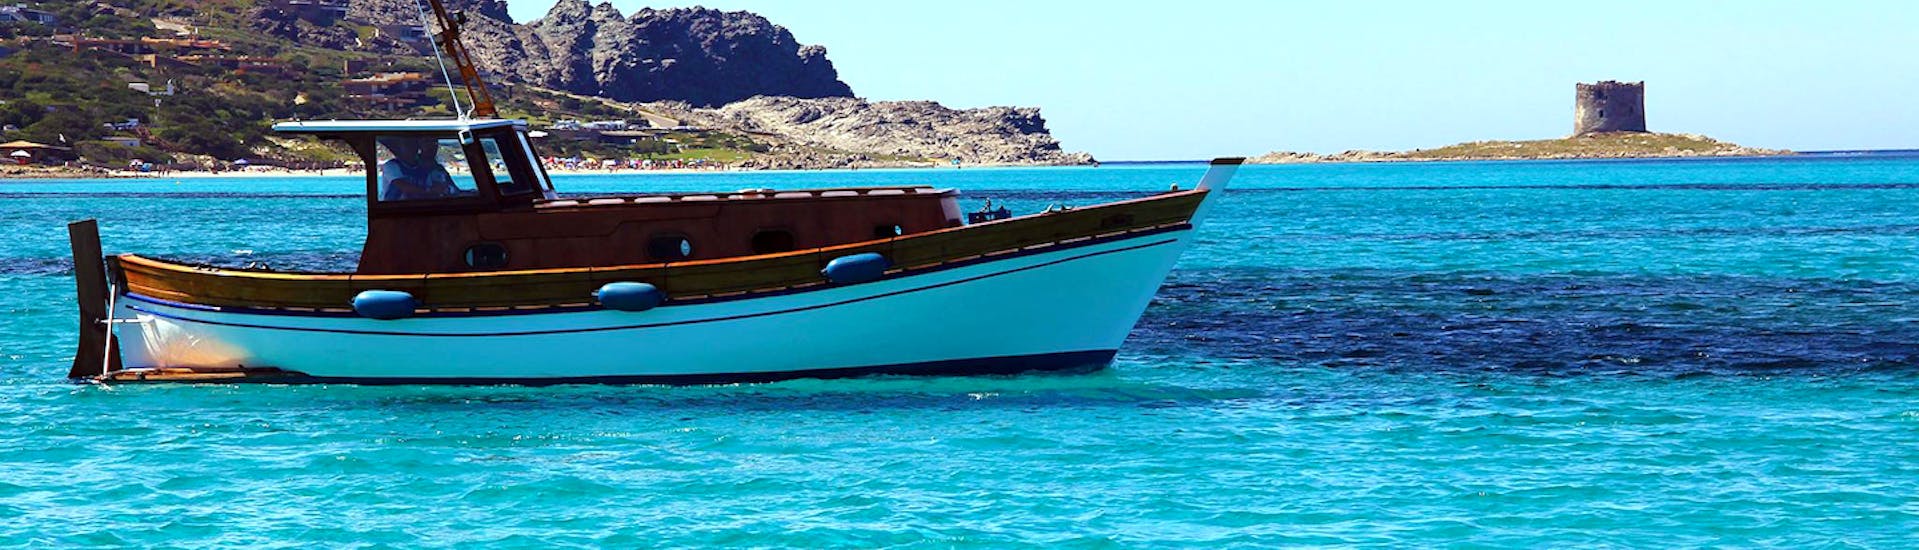 De boot van Onda Blu Asinara die wordt gebruikt voor de boottocht van Stintino naar Asinara National Park met lunch, vaart over de zee.